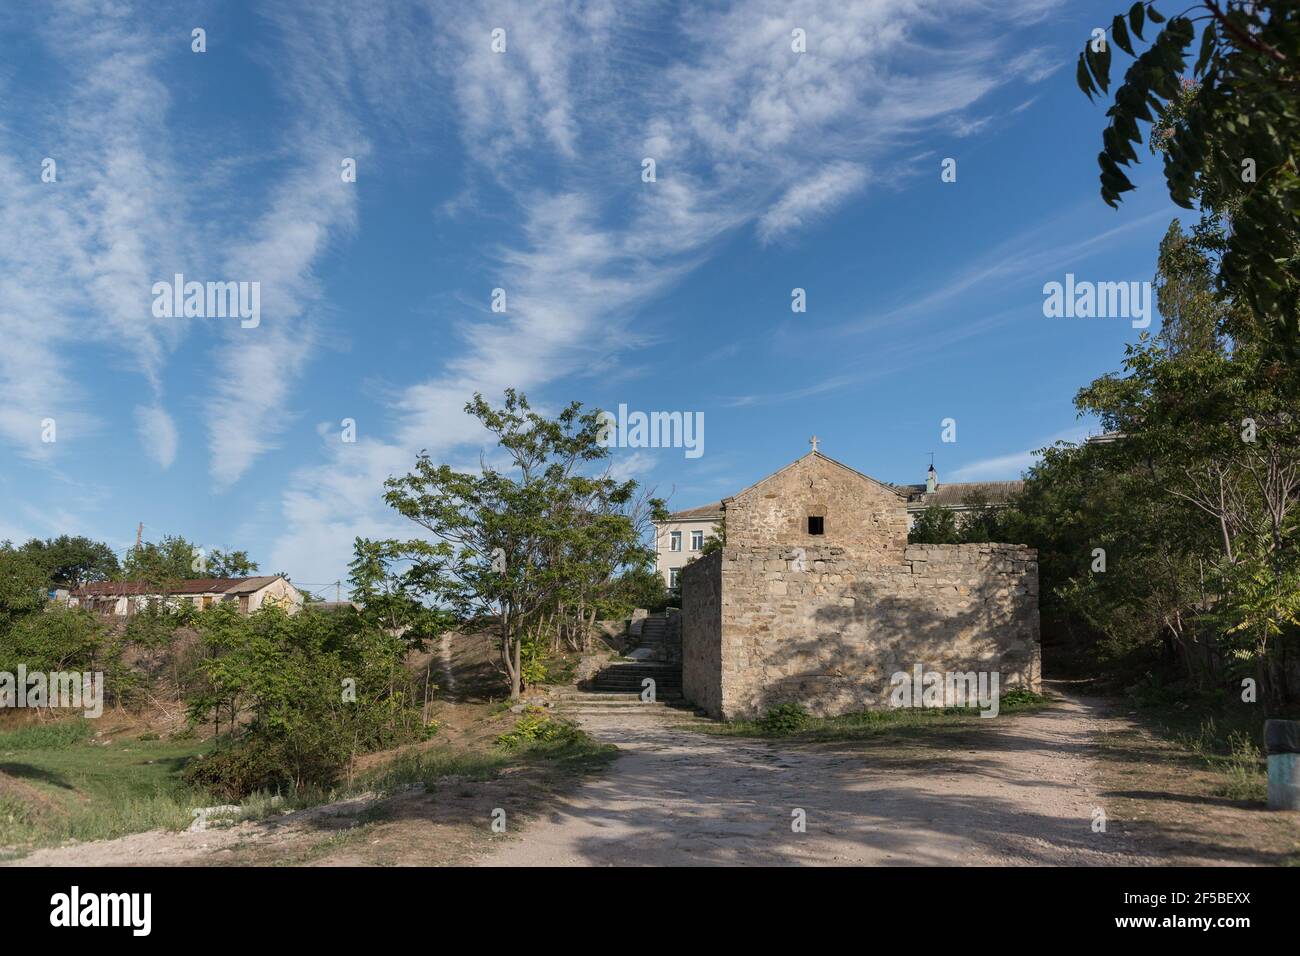 La Iglesia de San Juan el teólogo, perteneciente a los edificios de la fortaleza genovesa de cuarentena en Feodosia, según datos existentes, fue b Foto de stock